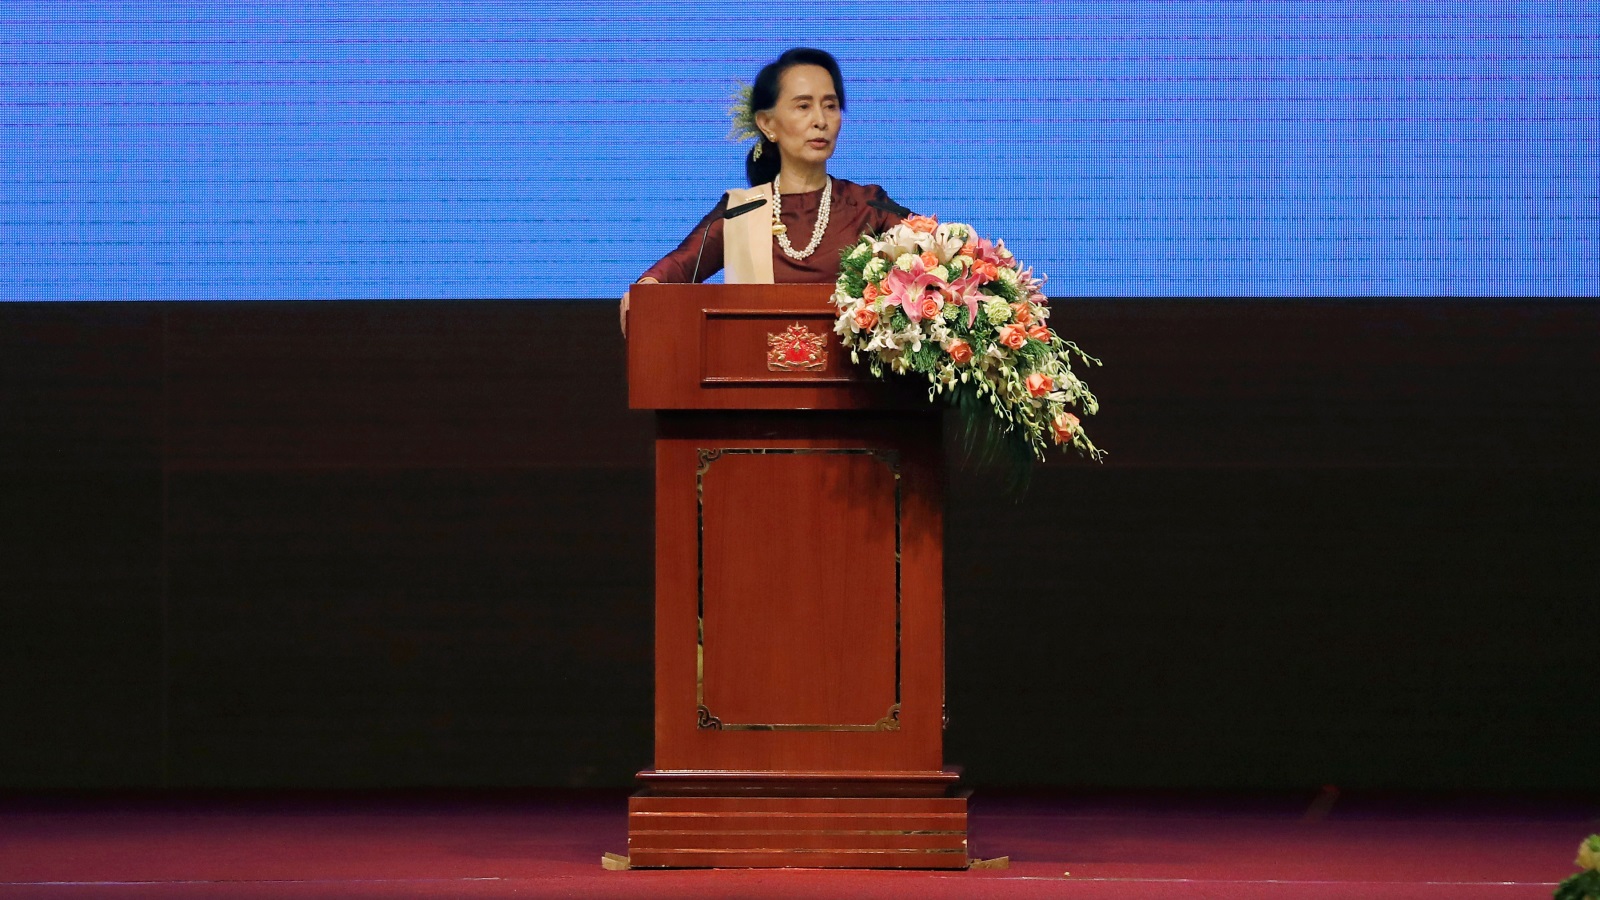 رئيسة بورما الحالية سو كي والحاصلة على جائزة نوبل للسلام  (رويترز)